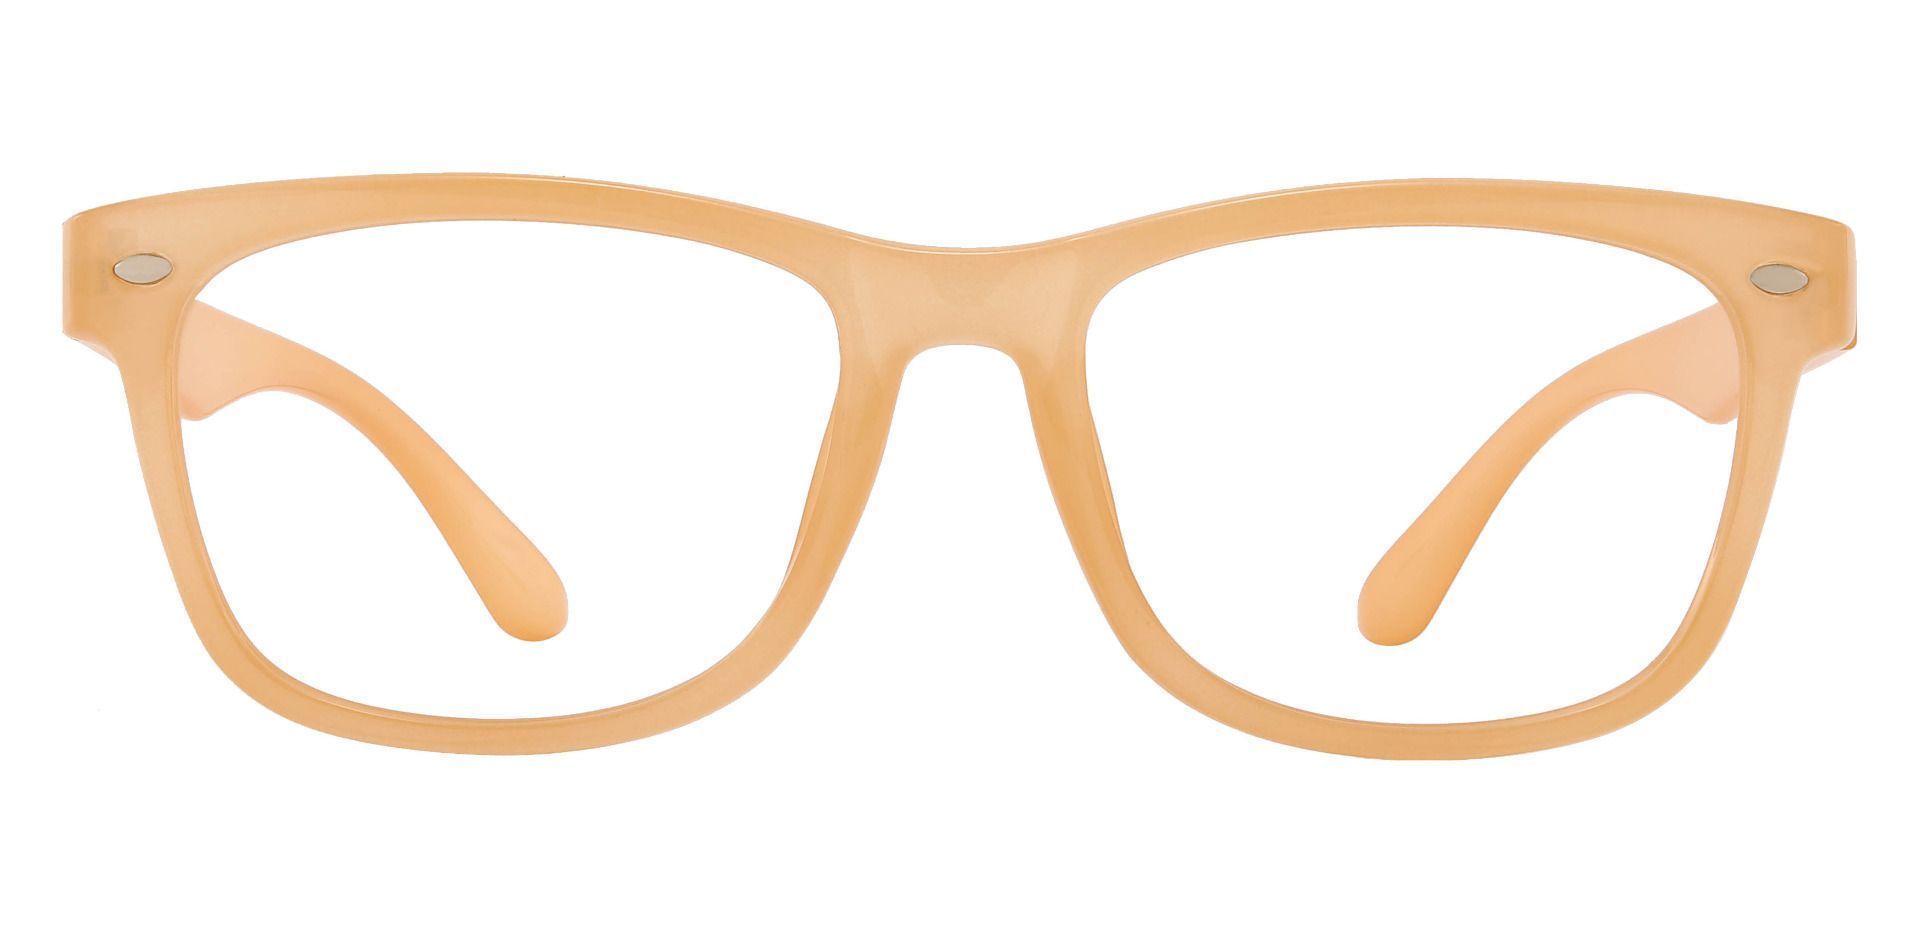 Oscar Rectangle Non-Rx Glasses - Brown